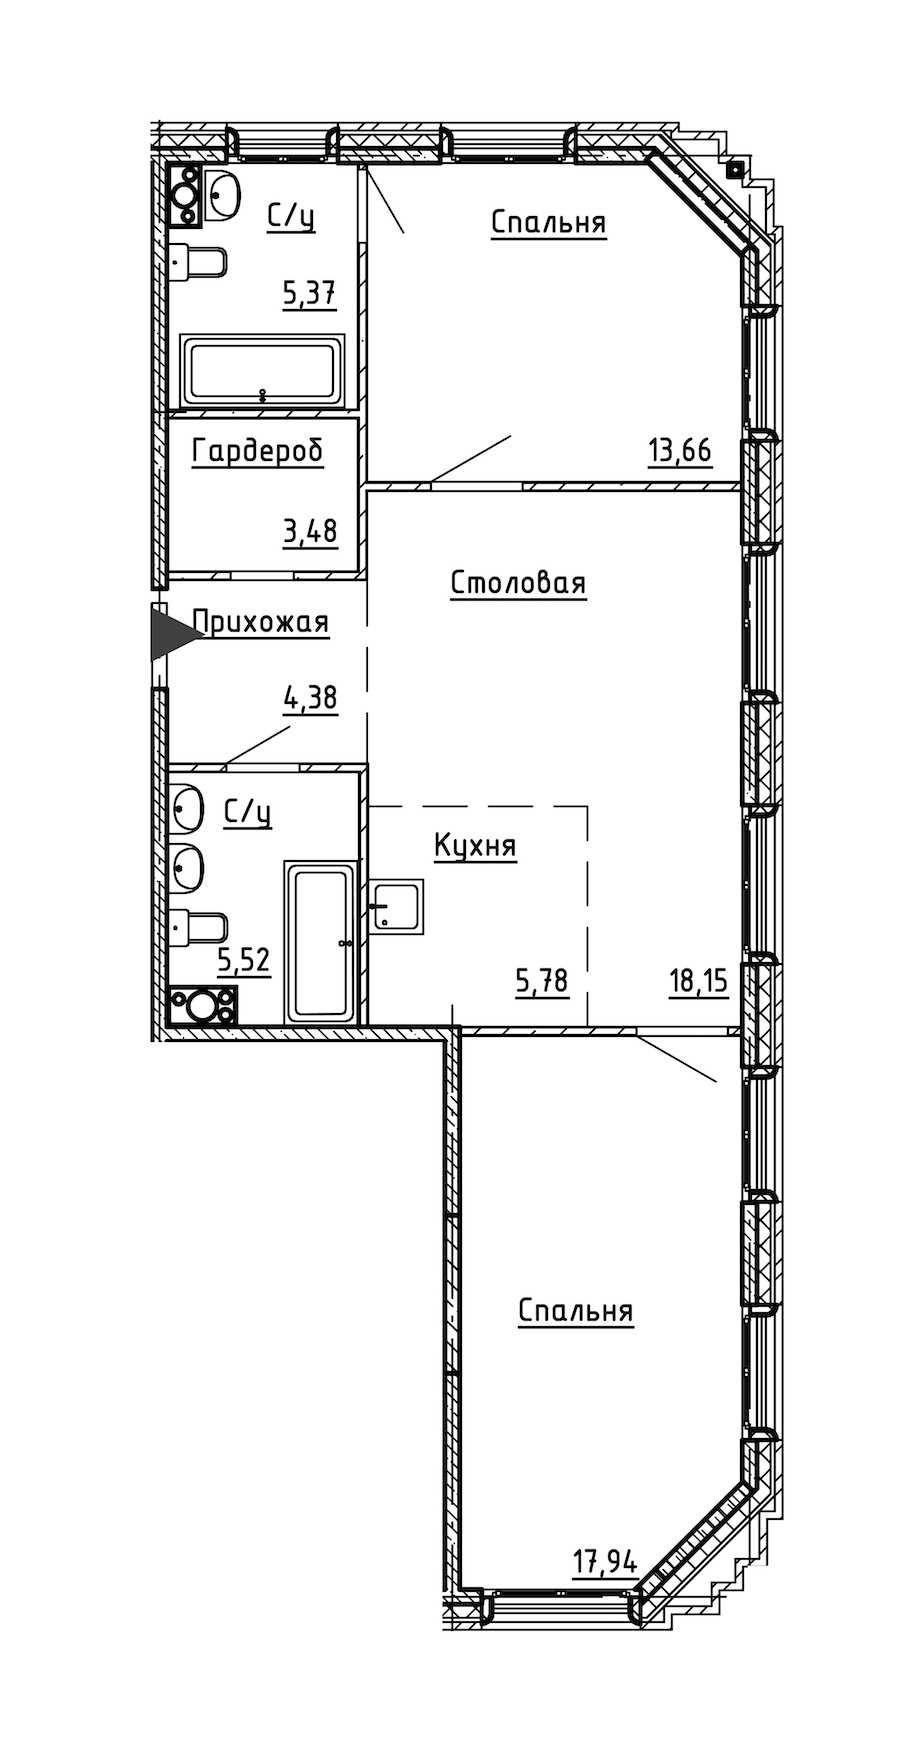 Двухкомнатная квартира в : площадь 74.28 м2 , этаж: 5 – купить в Санкт-Петербурге